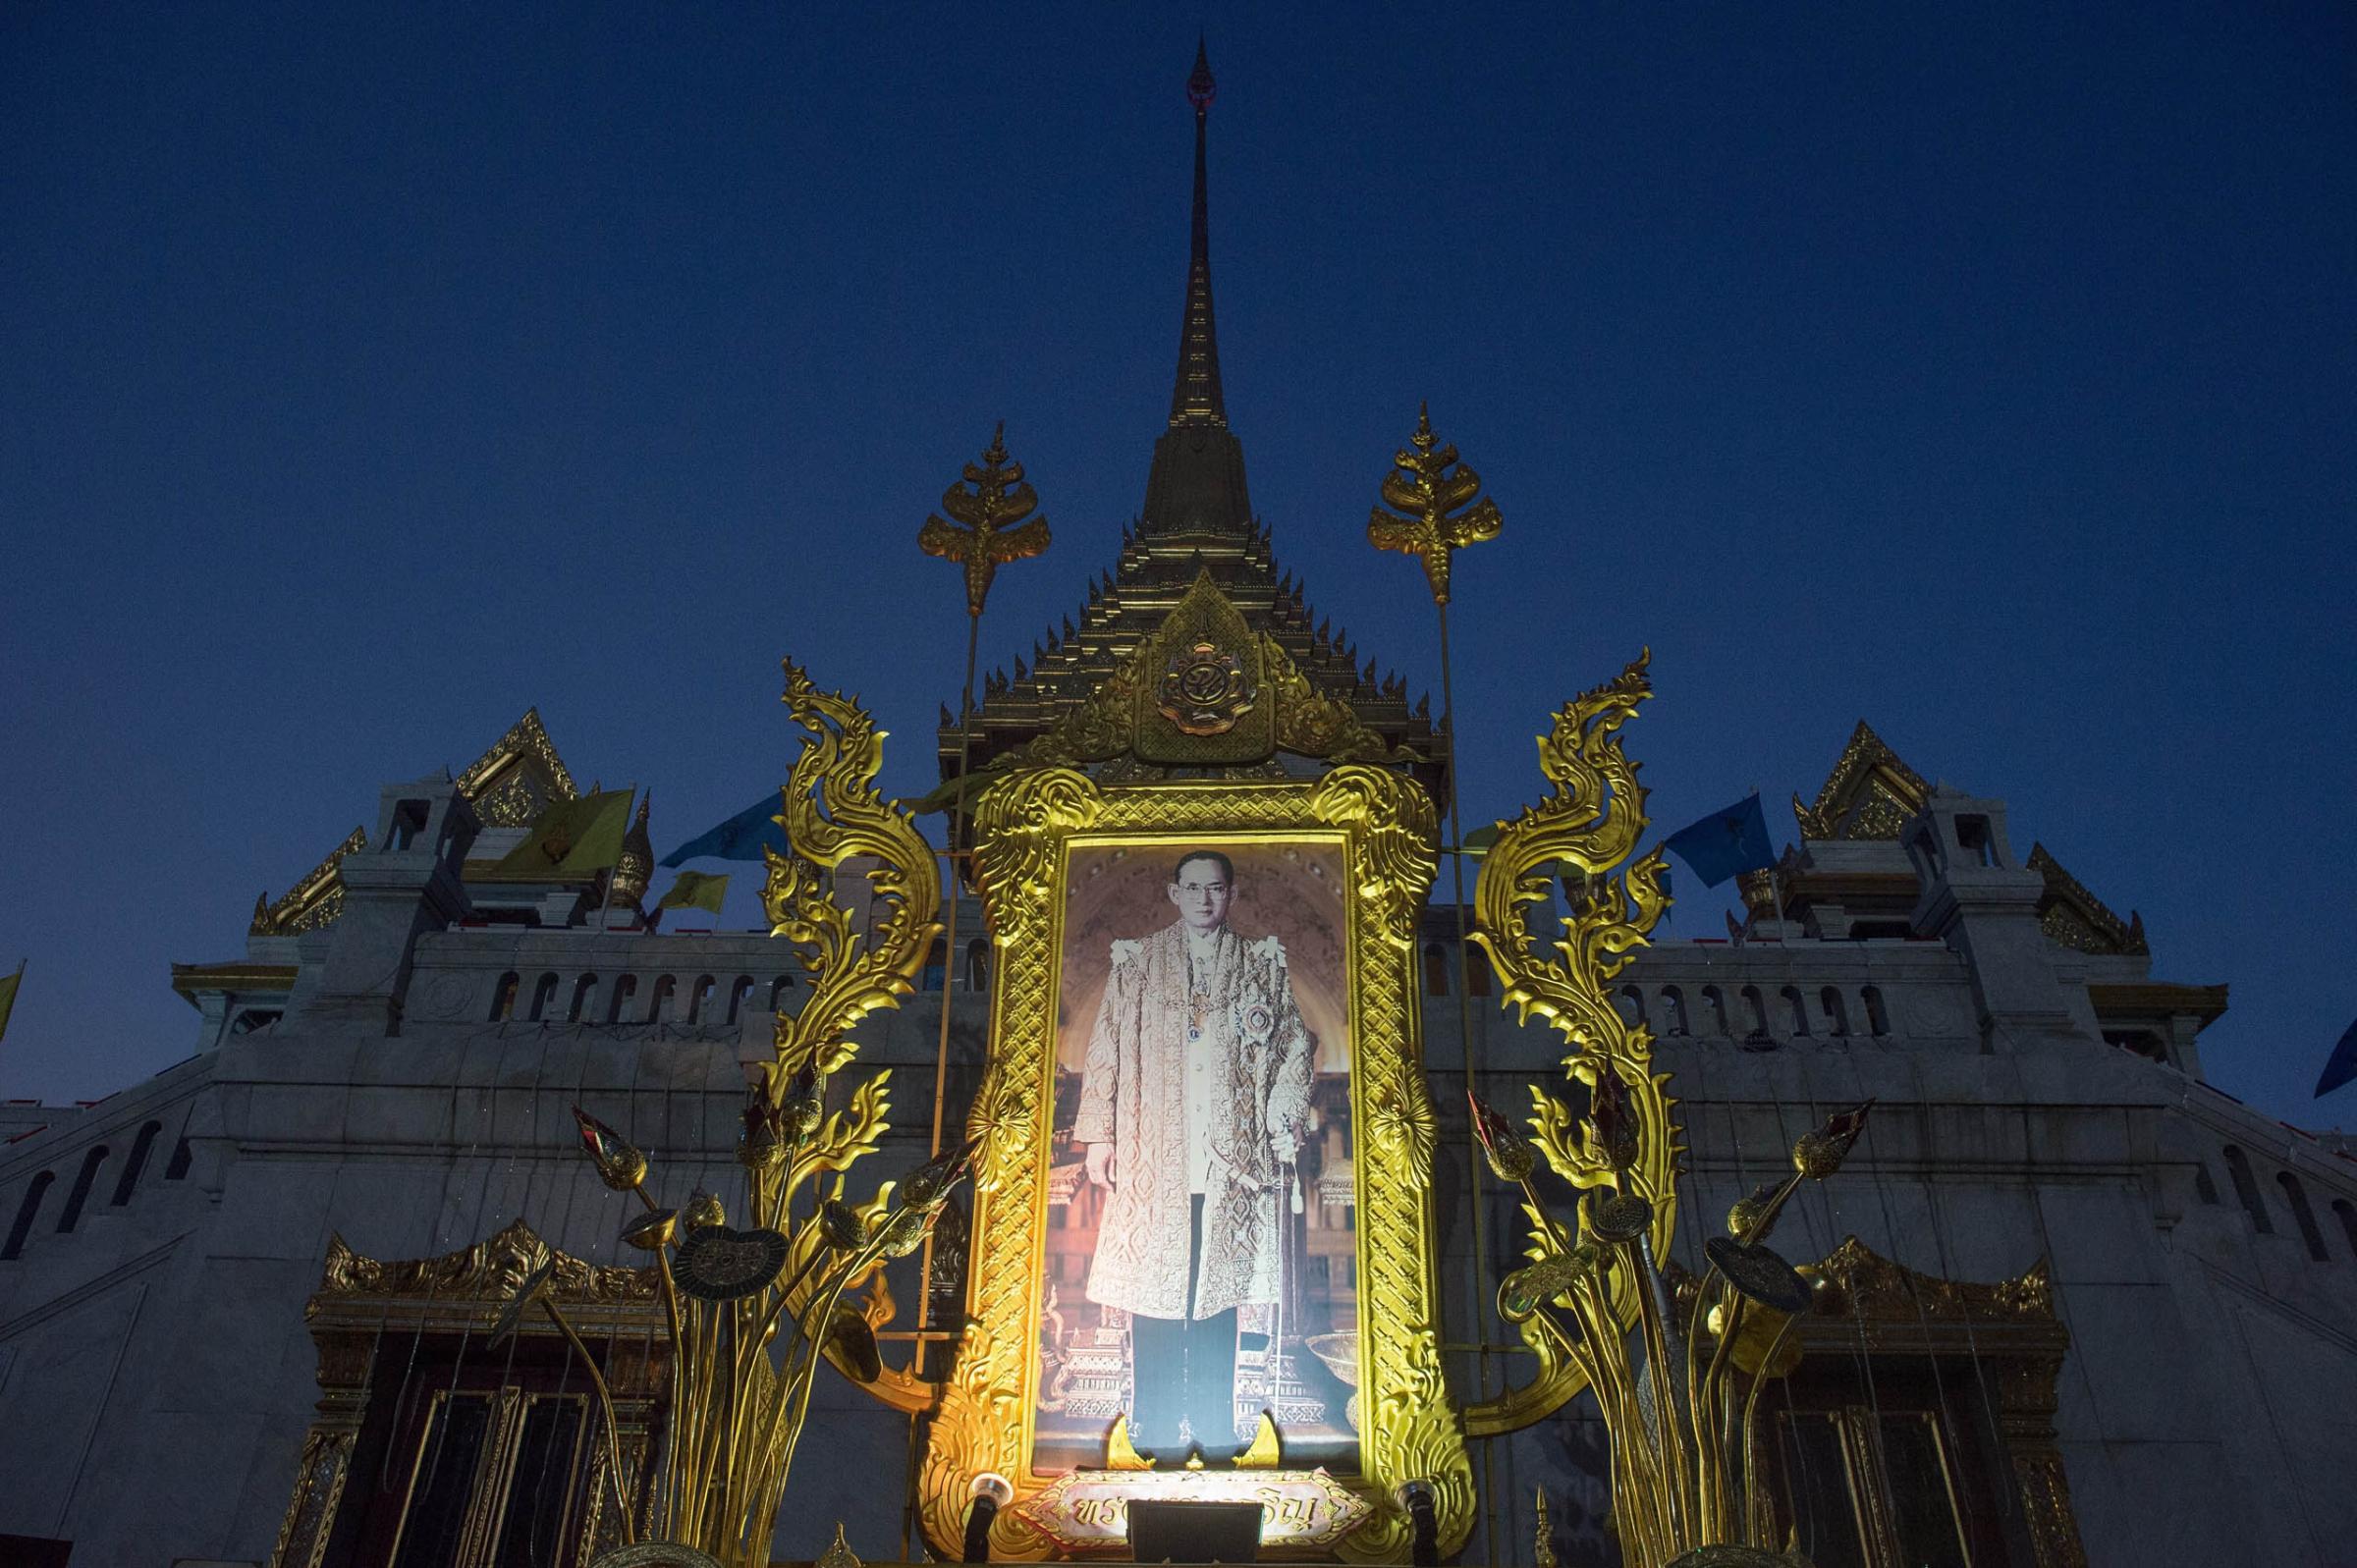 King Bhumibol Adulyadej displayed at the Wat Trimitr temple in Bangkok, Jan. 16, 2015.